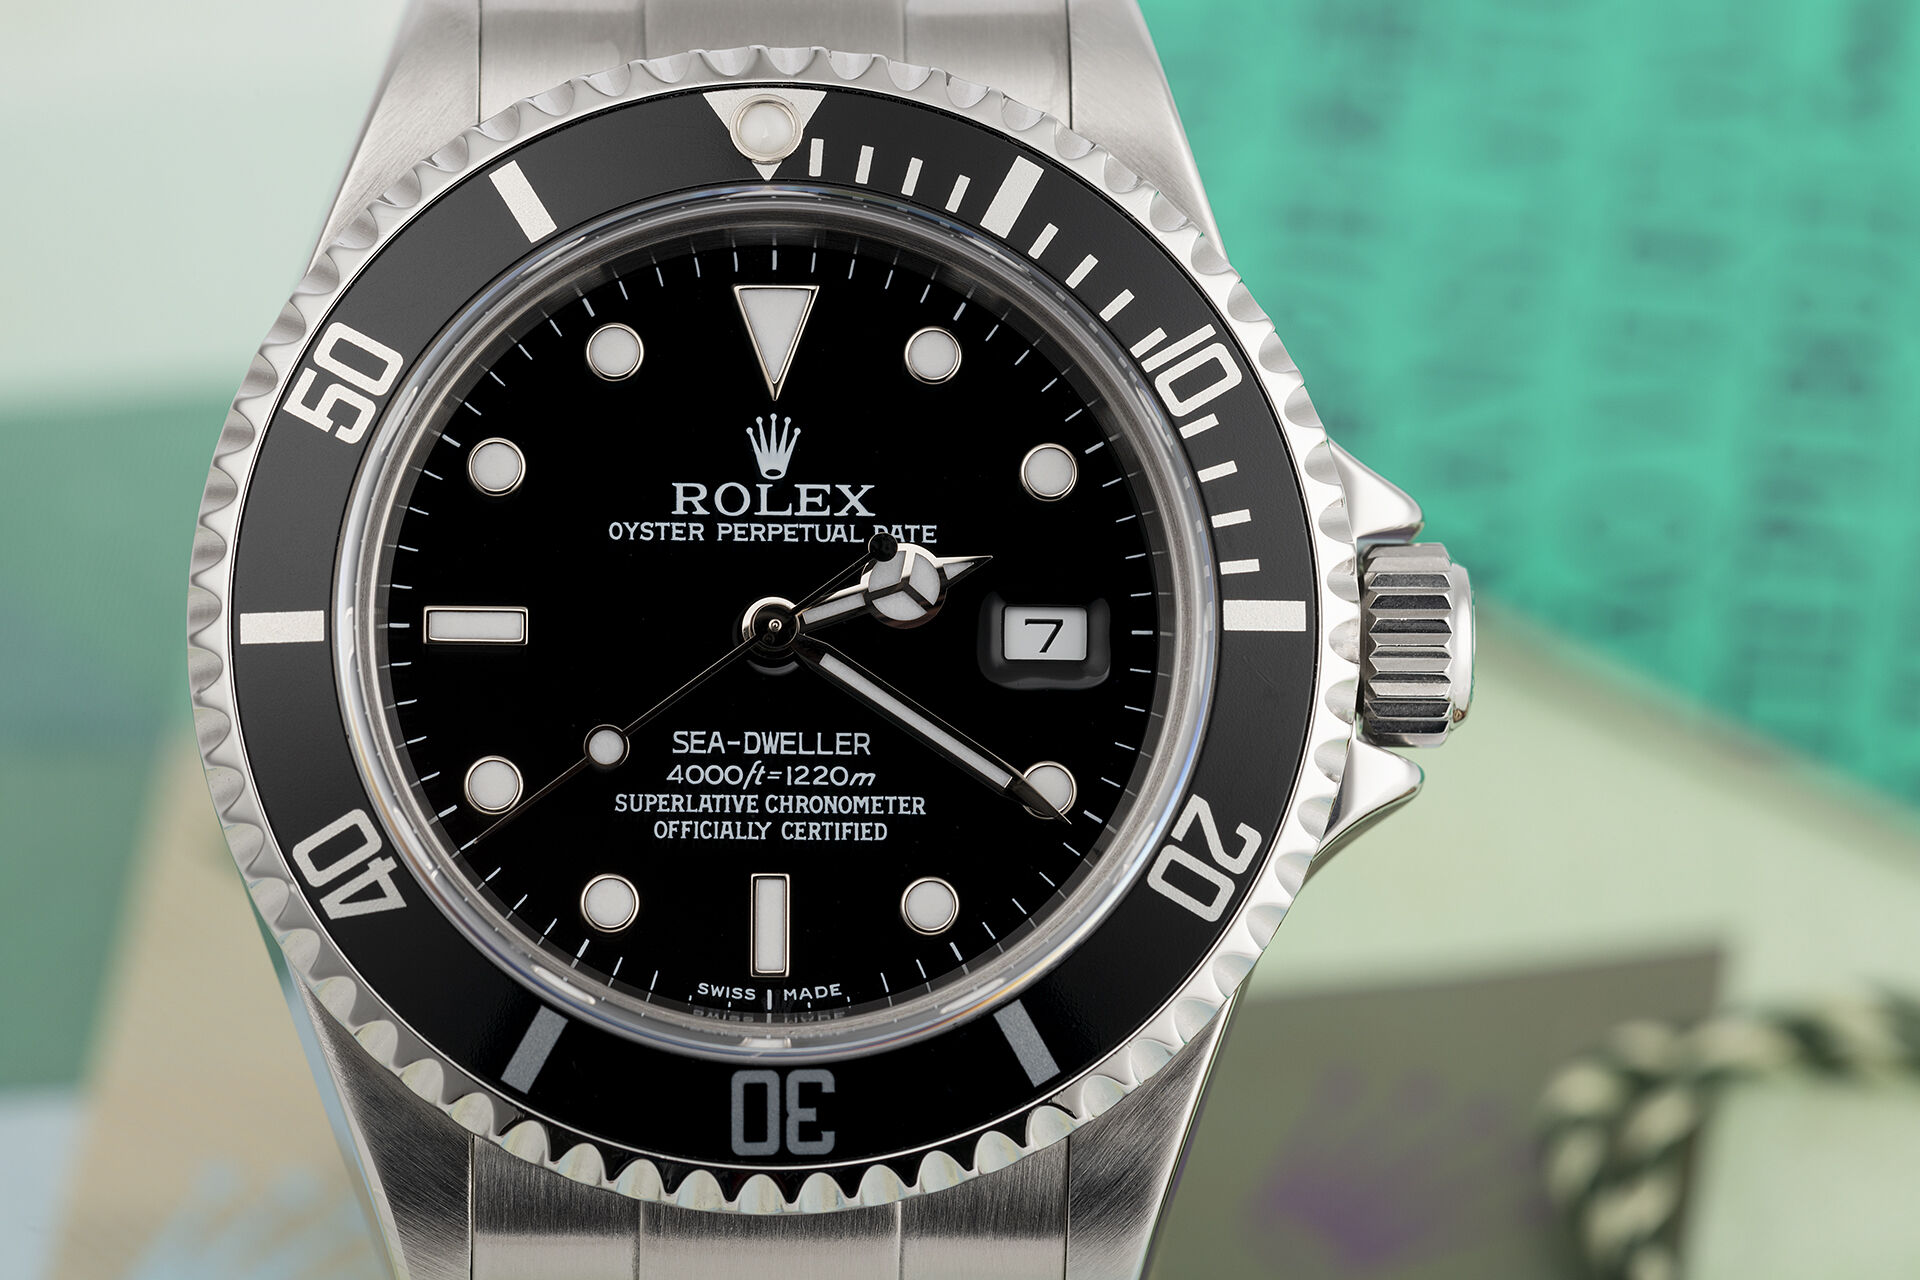 ref 16600 | Box & Certificate | Rolex Sea-Dweller